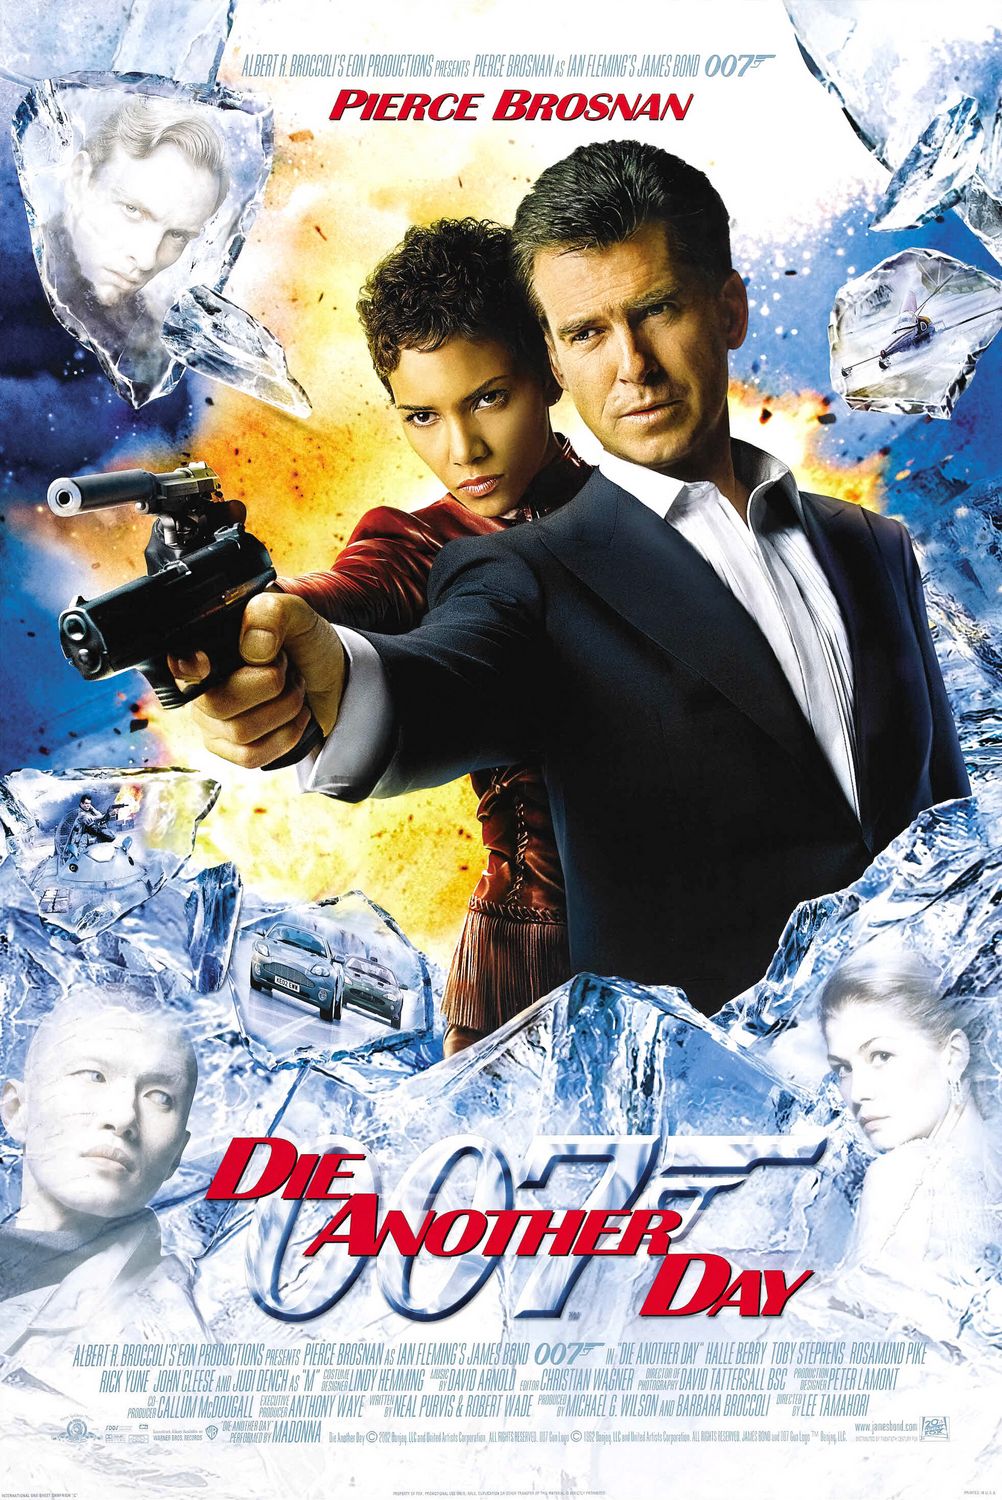 Pierce Brosnan's James Bond Movie Die Another Day, 2002